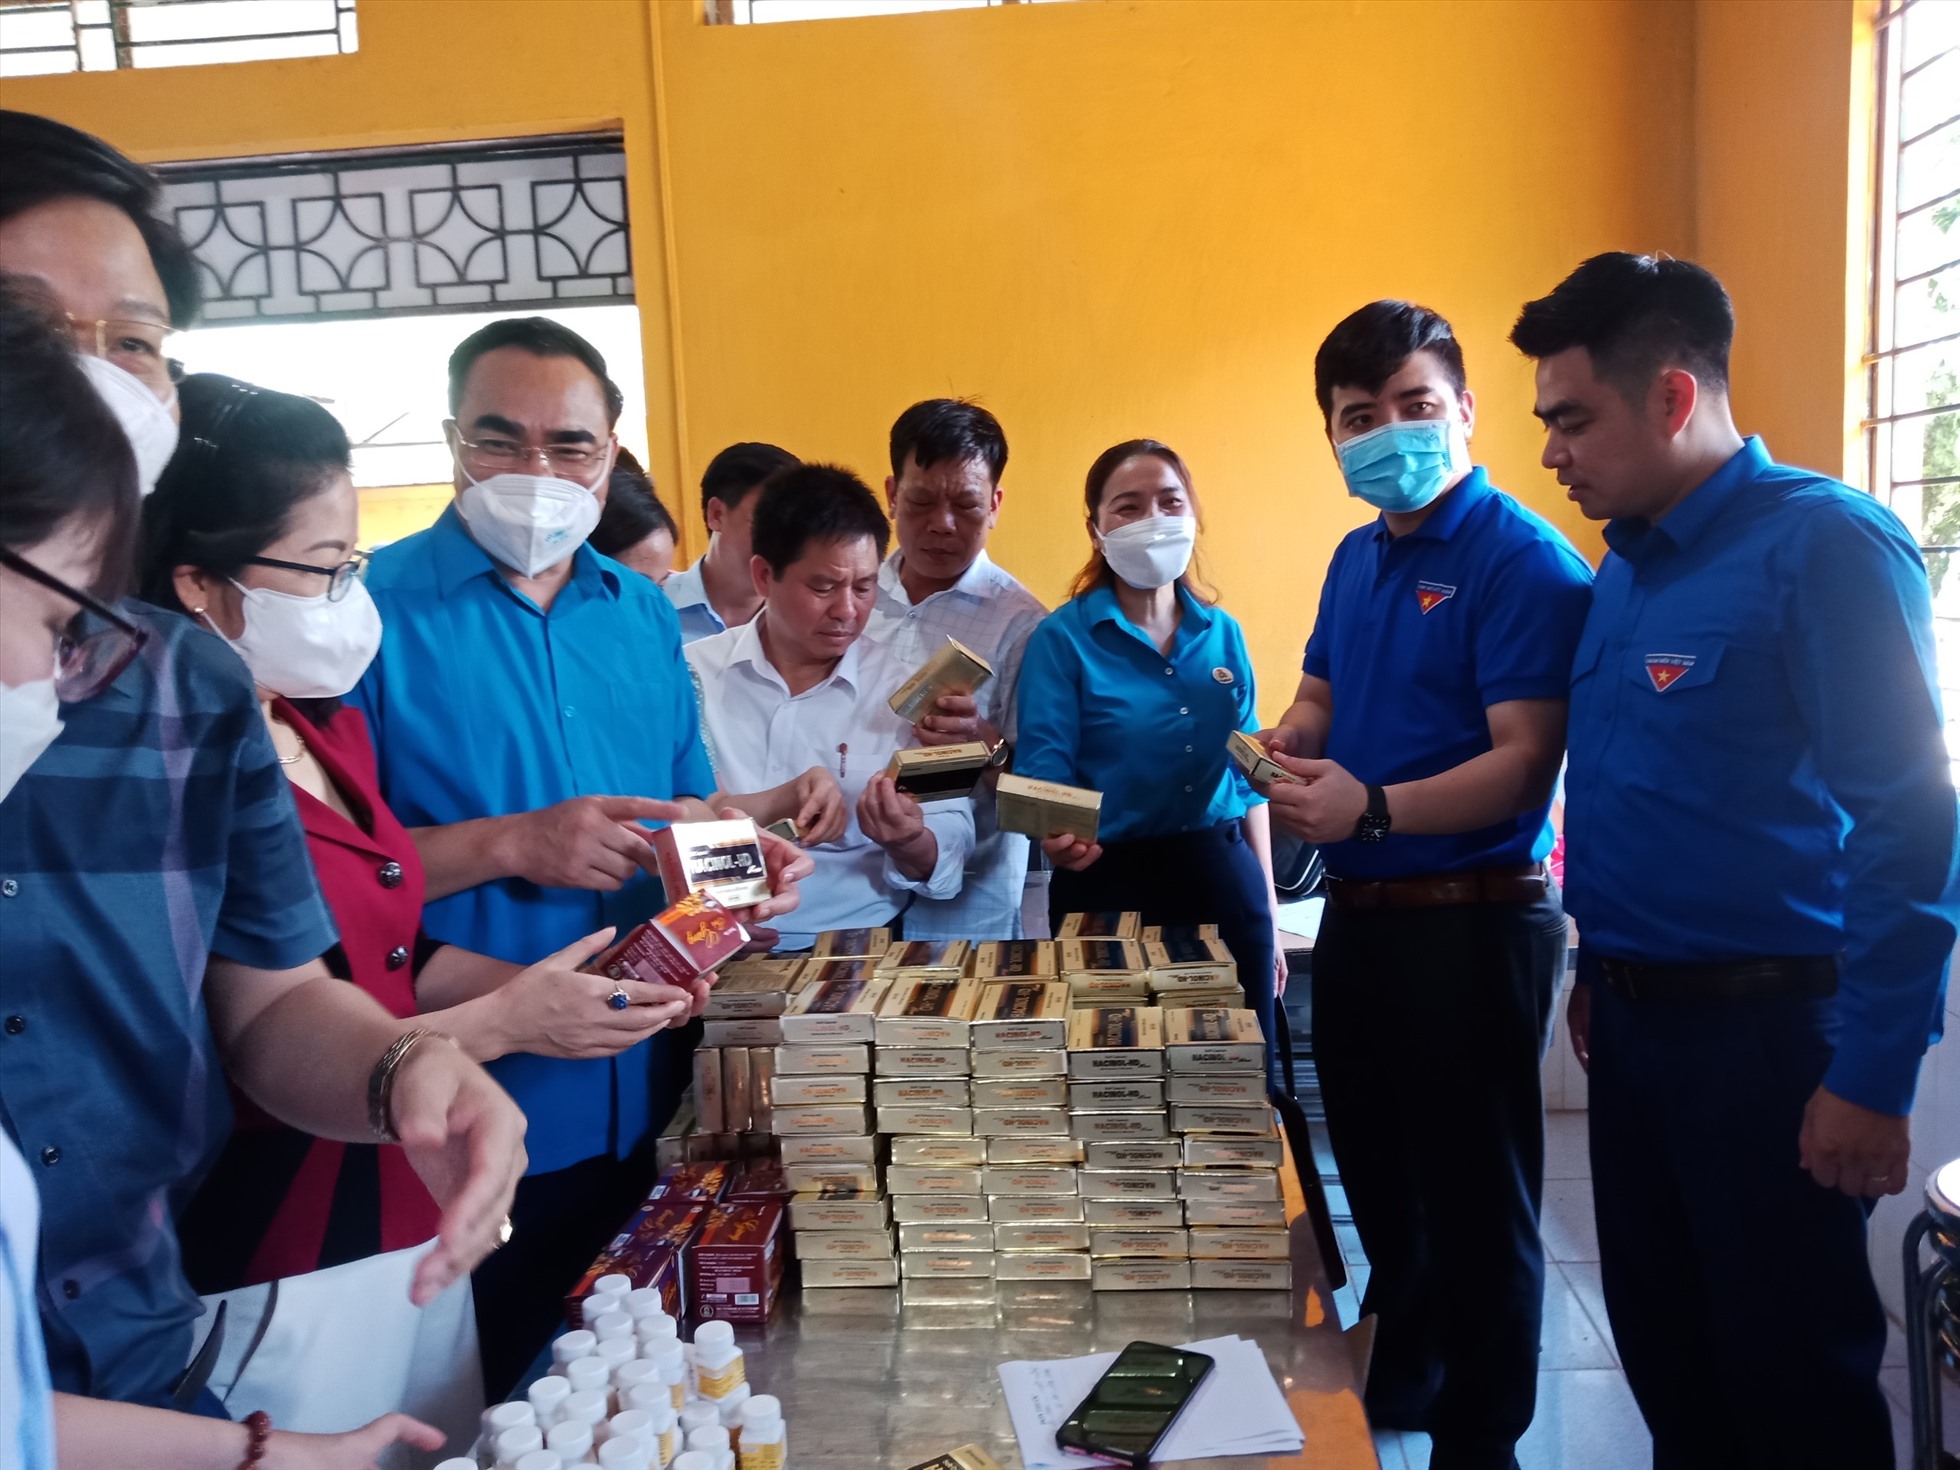 LĐLĐ huyện phối hợp tổ chức khám sức khỏe, cấp phát thuốc miễn phí cho đoàn viên trên địa bàn xã Lùng Vai. Ảnh: LĐLĐ tỉnh Lào Cai.